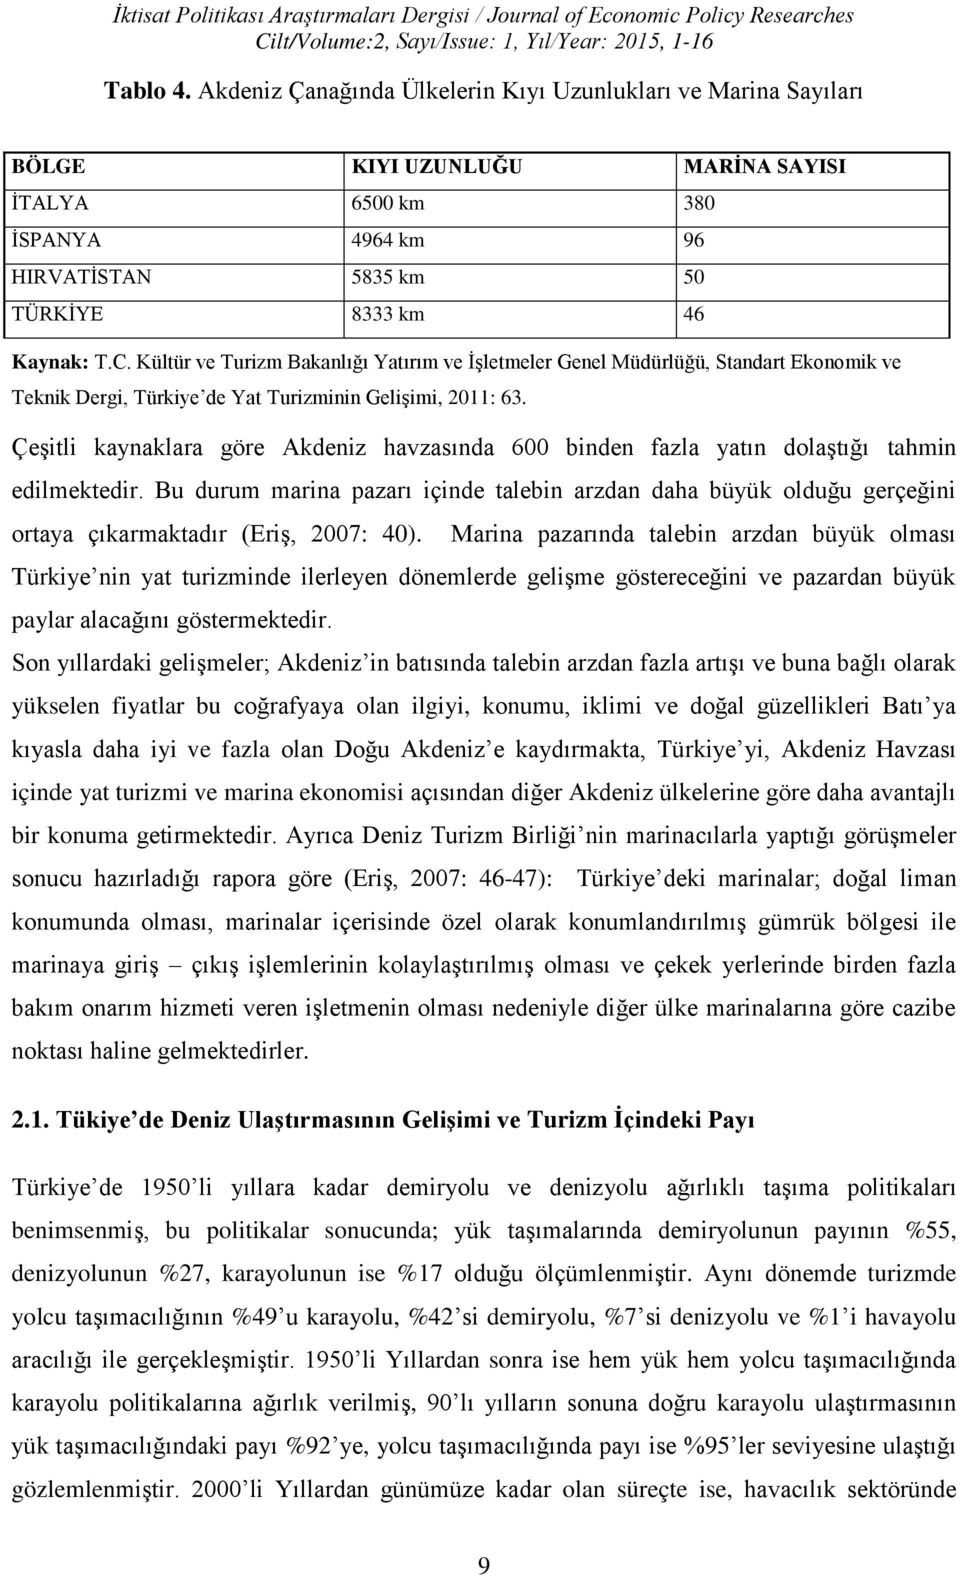 Kültür ve Turizm Bakanlığı Yatırım ve İşletmeler Genel Müdürlüğü, Standart Ekonomik ve Teknik Dergi, Türkiye de Yat Turizminin Gelişimi, 2011: 63.